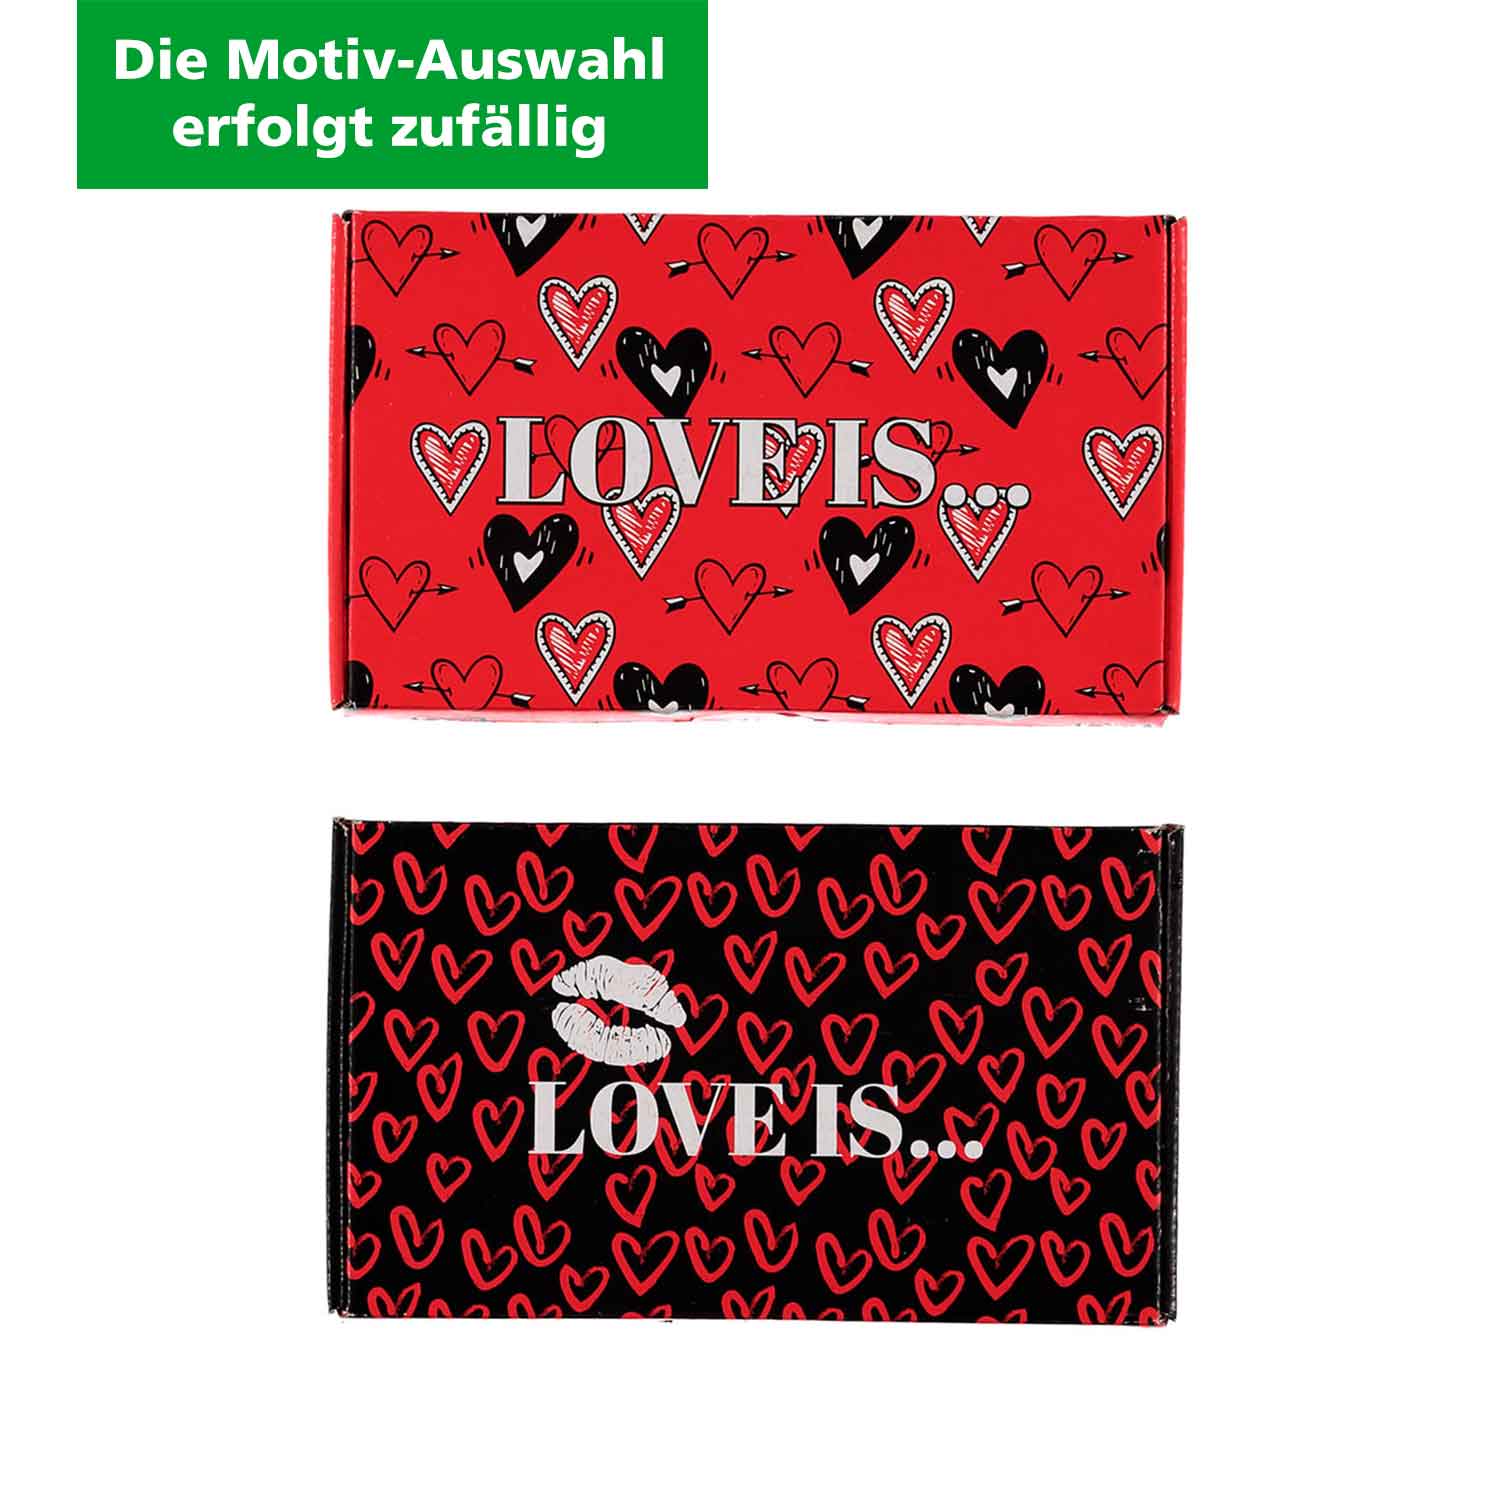 Herren Socken "Love is…" Geschenkbox (Motiv-Auswahl erfolgt zufällig), rot/schwarz